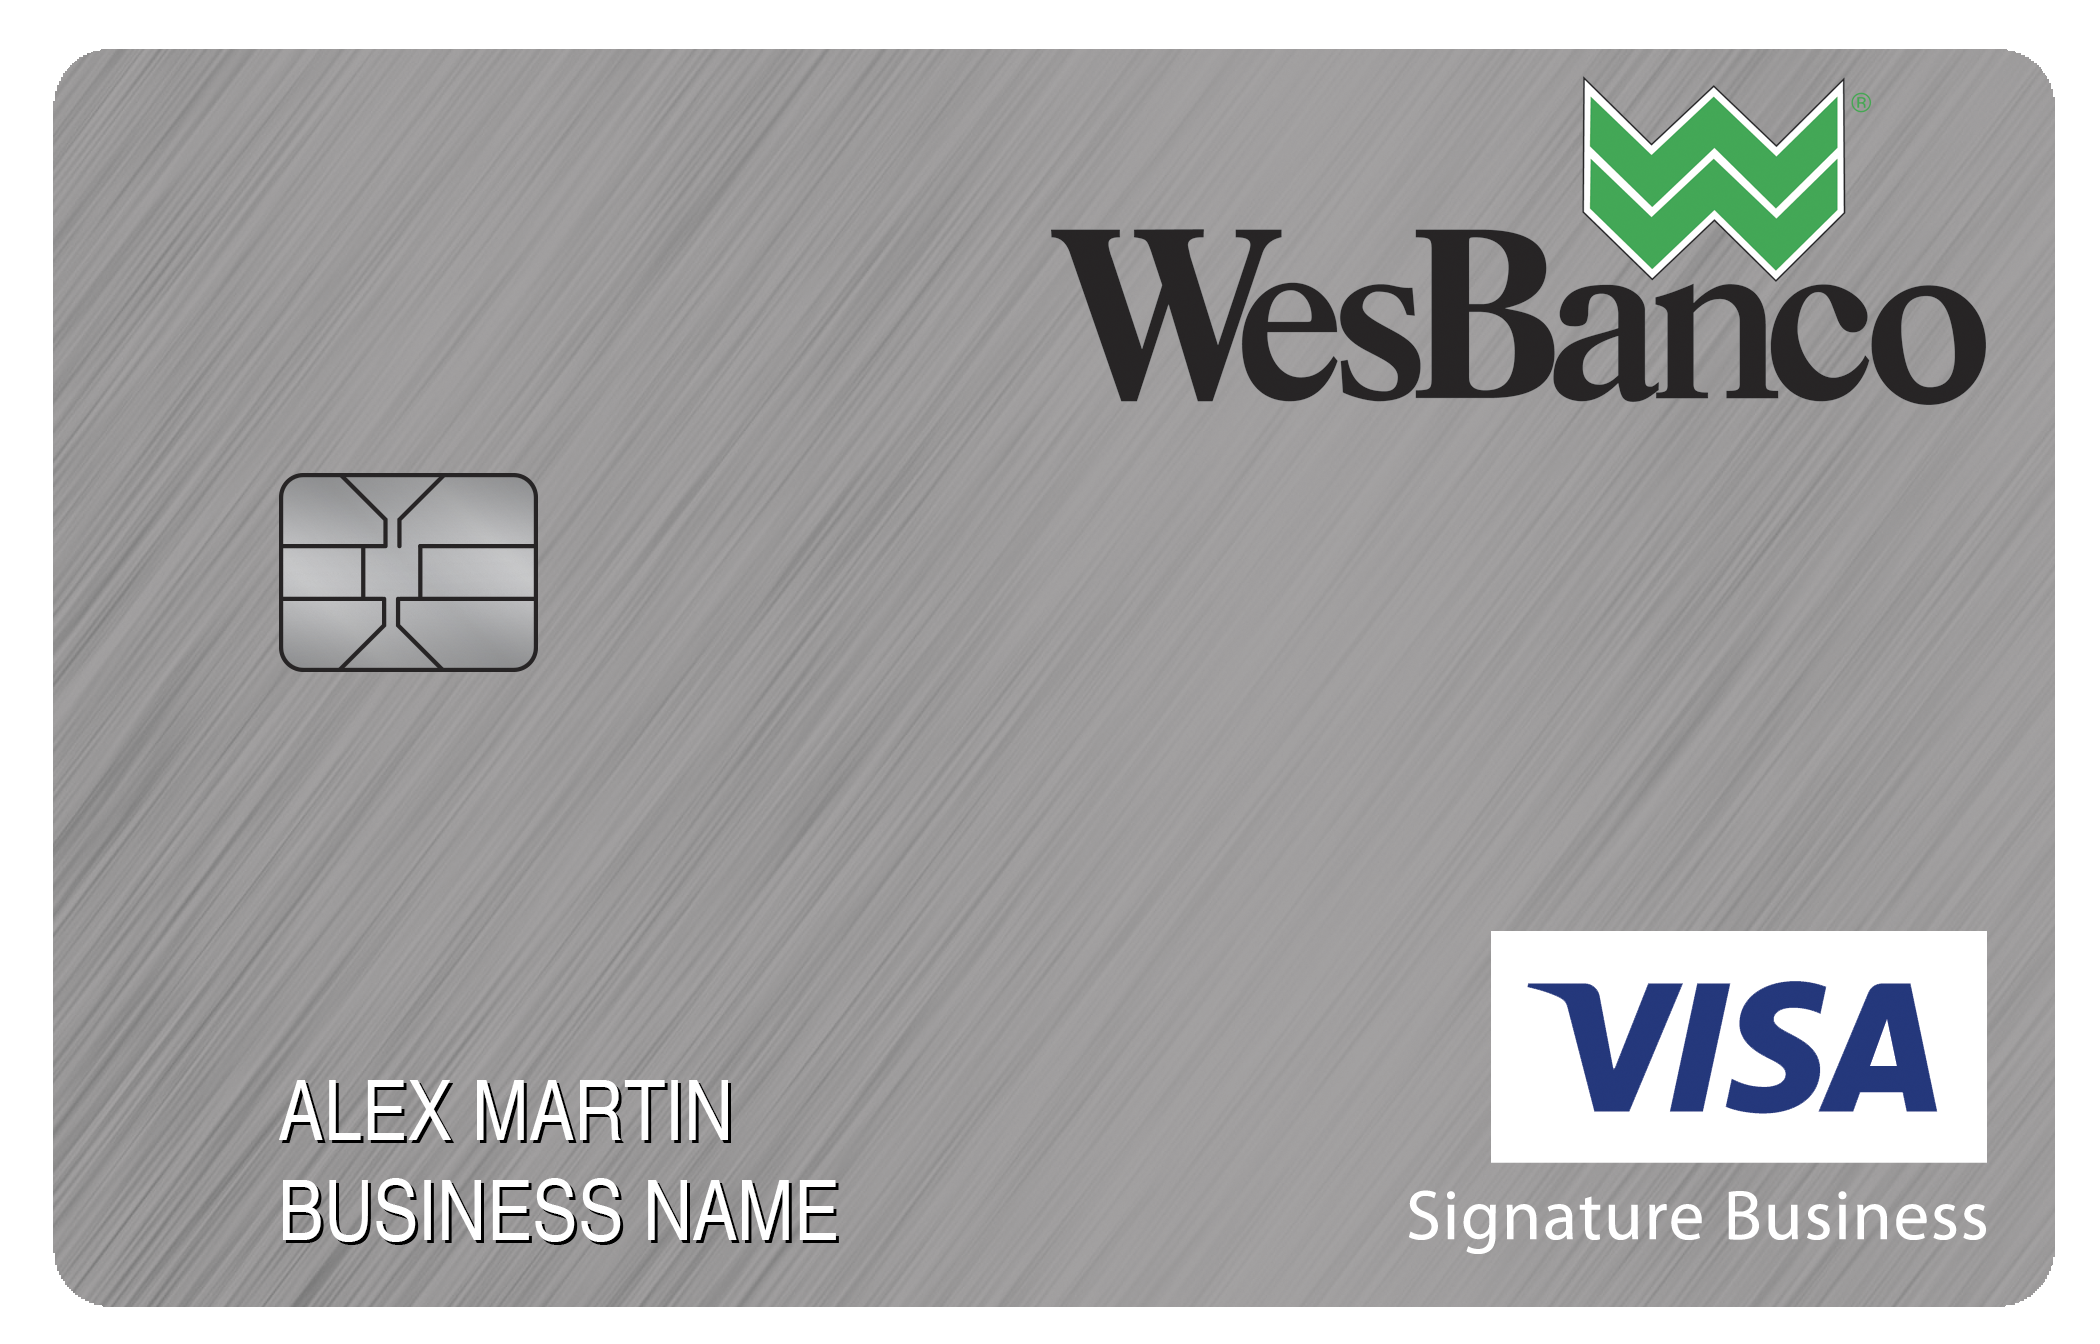 WesBanco Smart Business Rewards Card